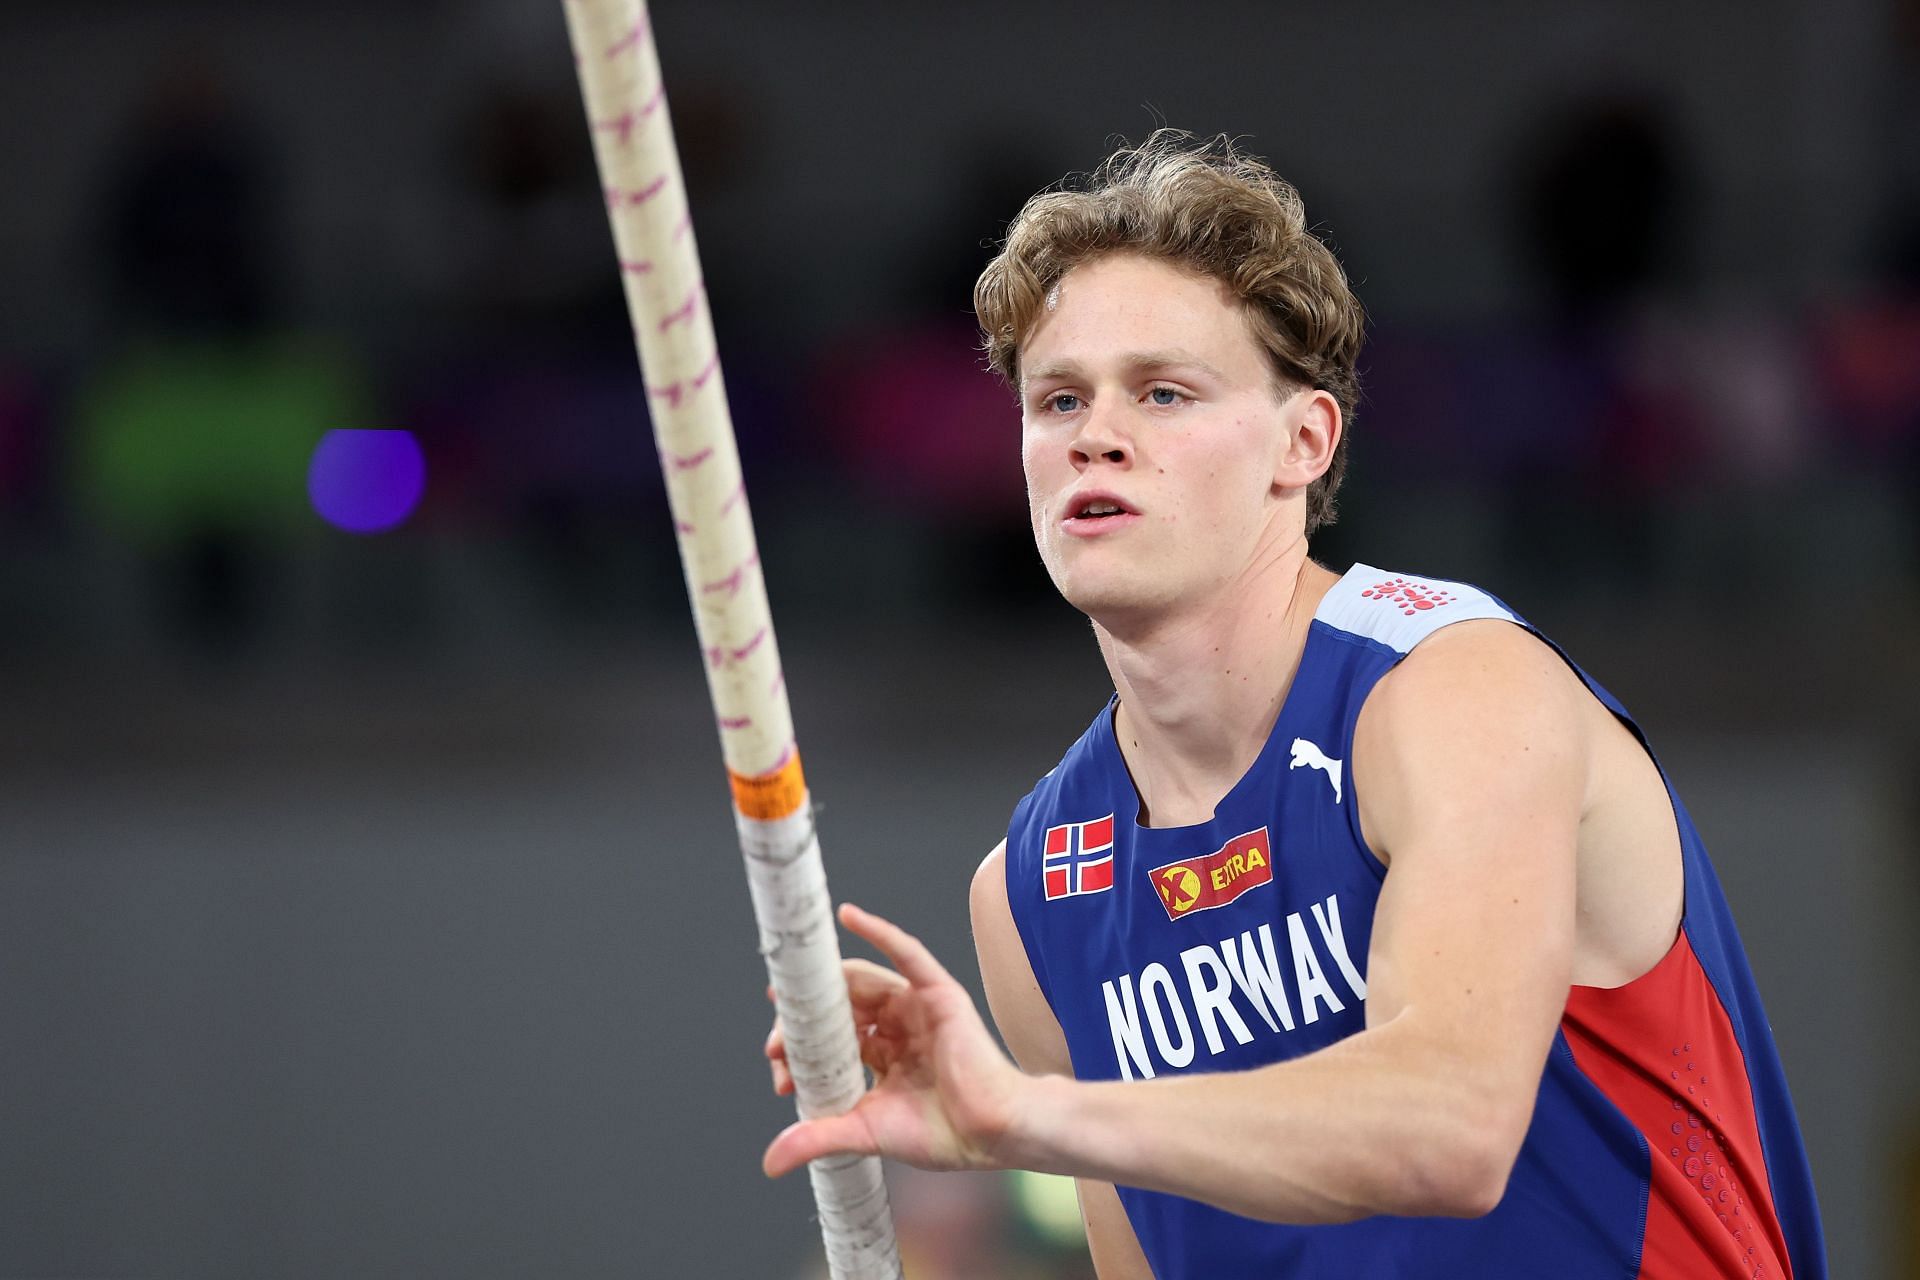 Karsten Warholm at the World Athletics Indoor Championships in Glasgow